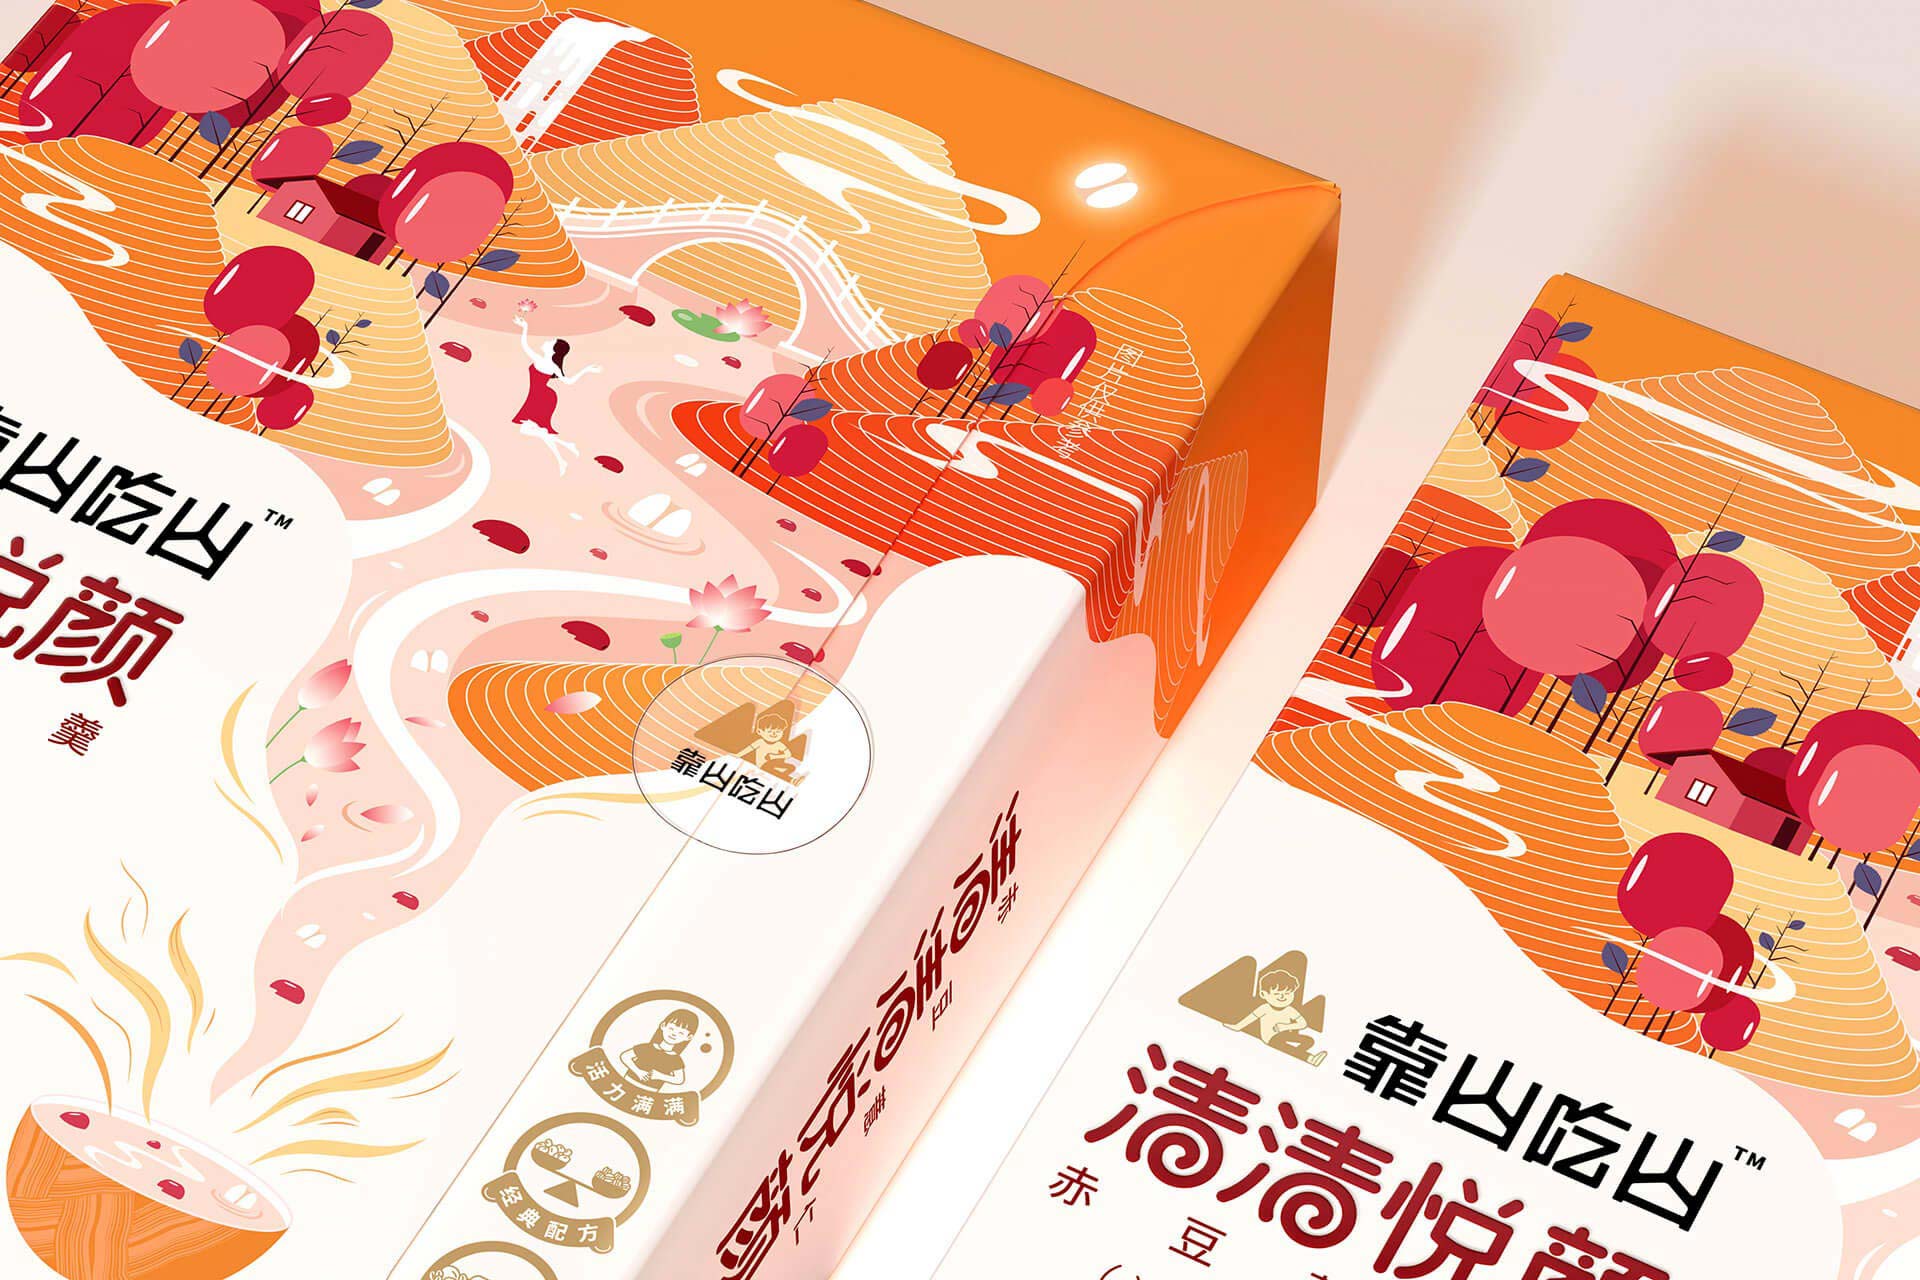 赤豆薏仁羮营养代餐产品包装设计-厚启包装设计